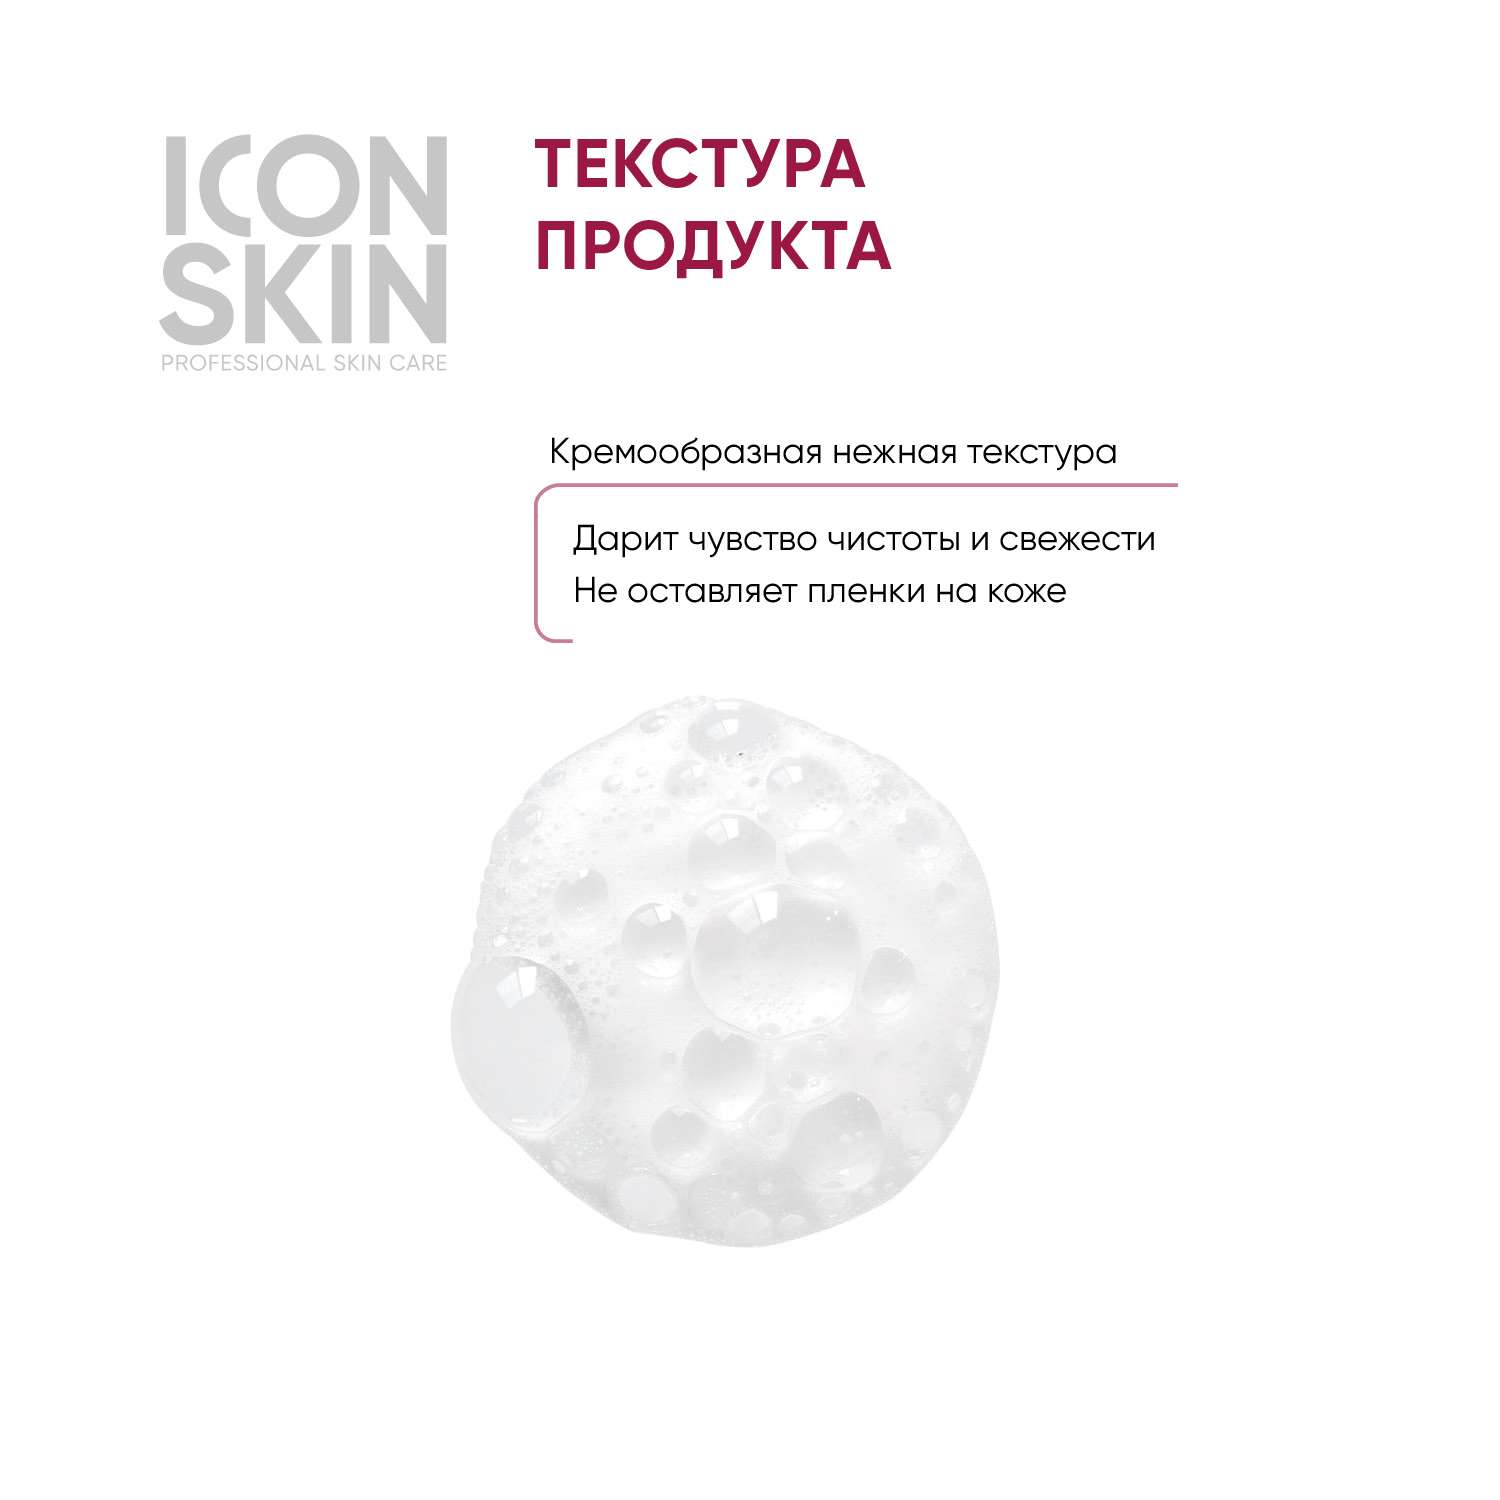 Пенка ICON SKIN очищающая для умывания velvet touch 175 мл - фото 4